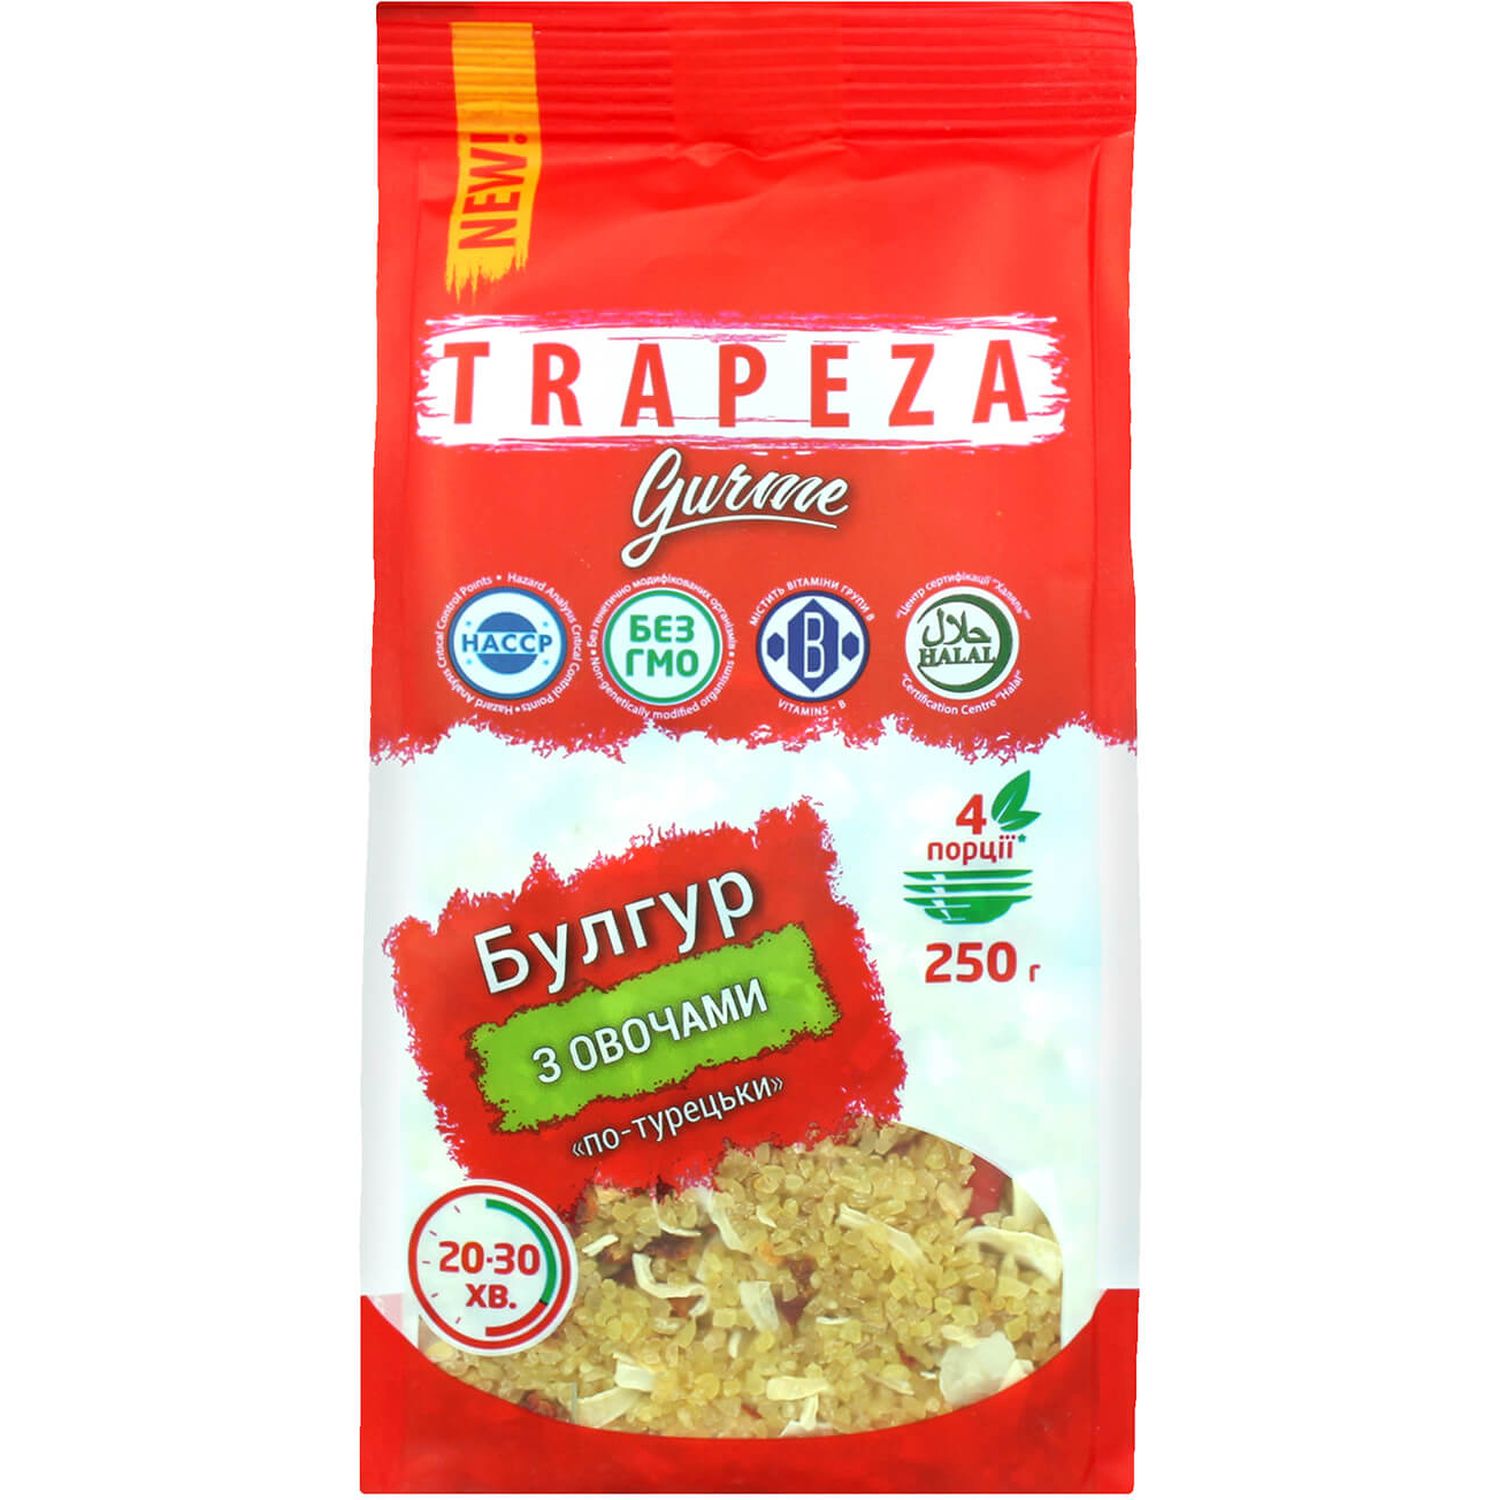 Булгур Trapeza Gurme По-турецьки з овочами 250 г (797932) - фото 1